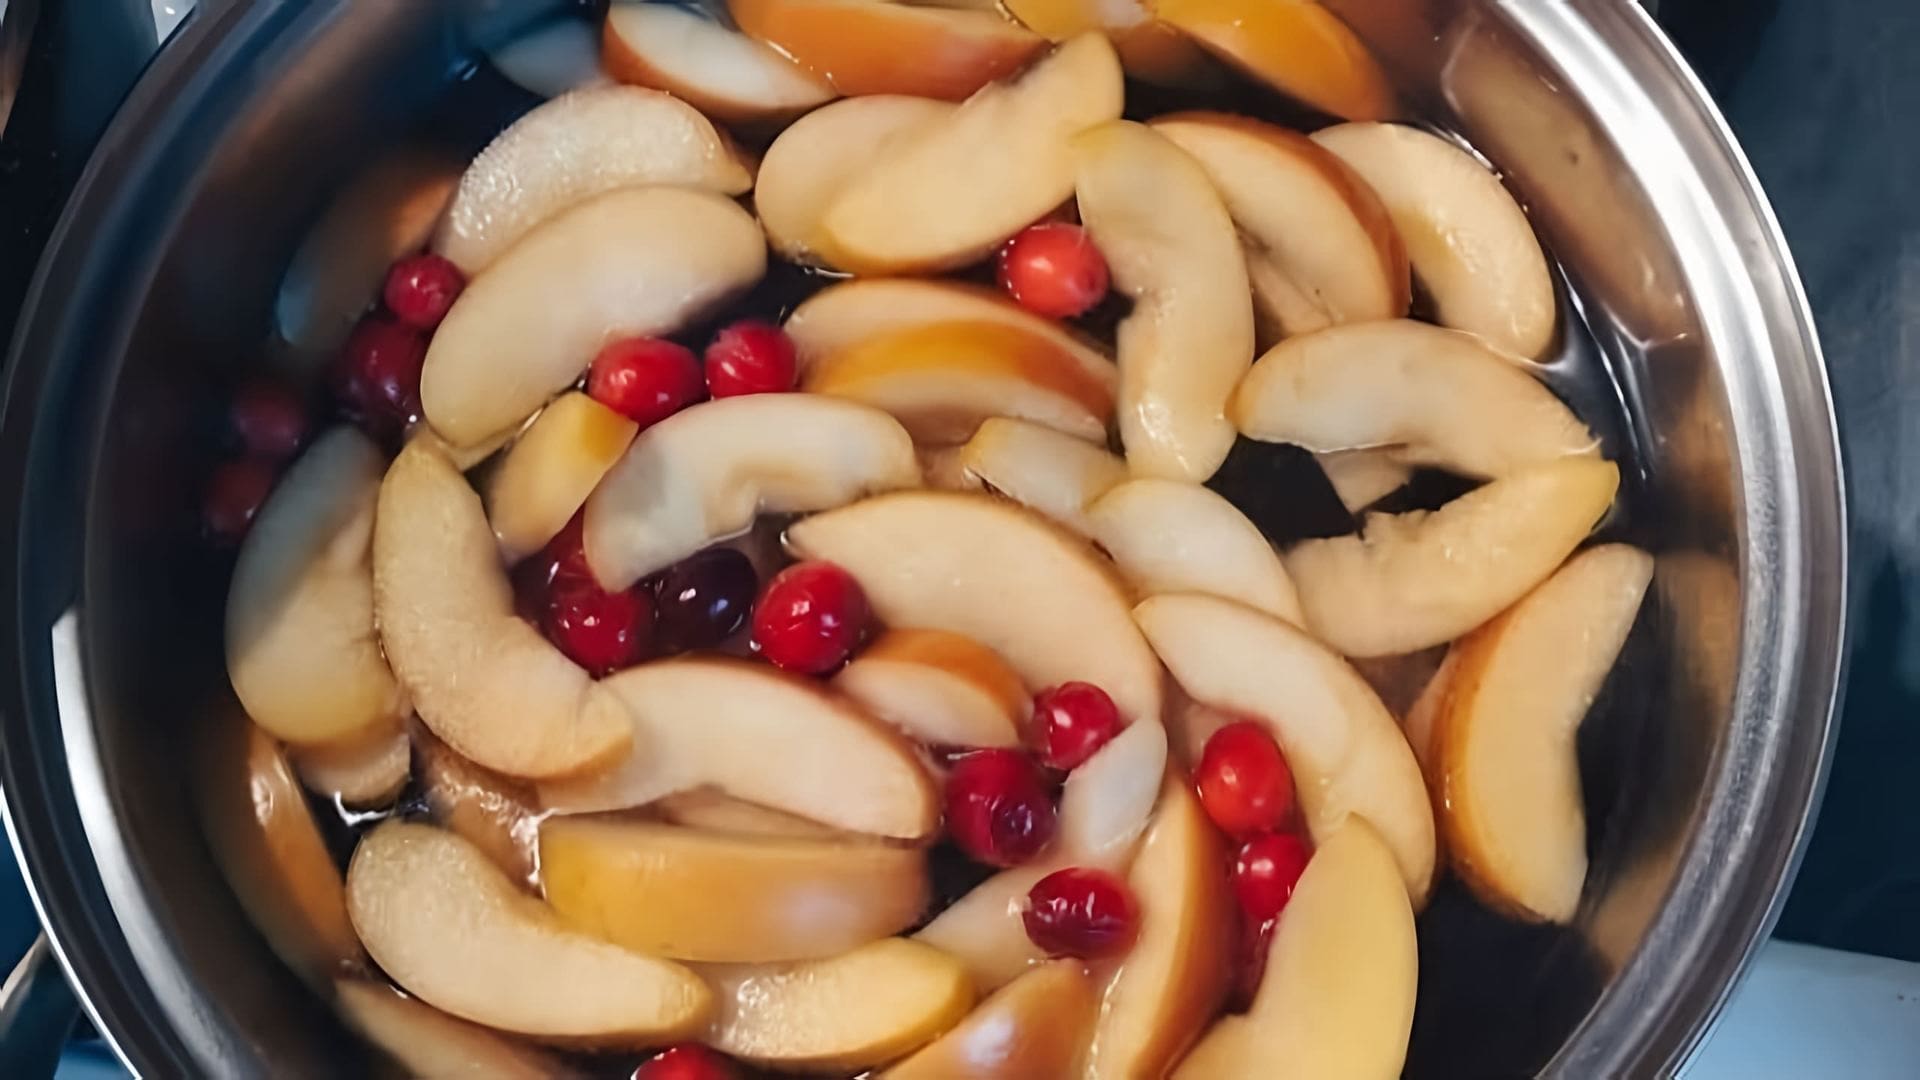 Яблочный компот с клюквой - это вкусный и полезный напиток, который можно приготовить в домашних условиях